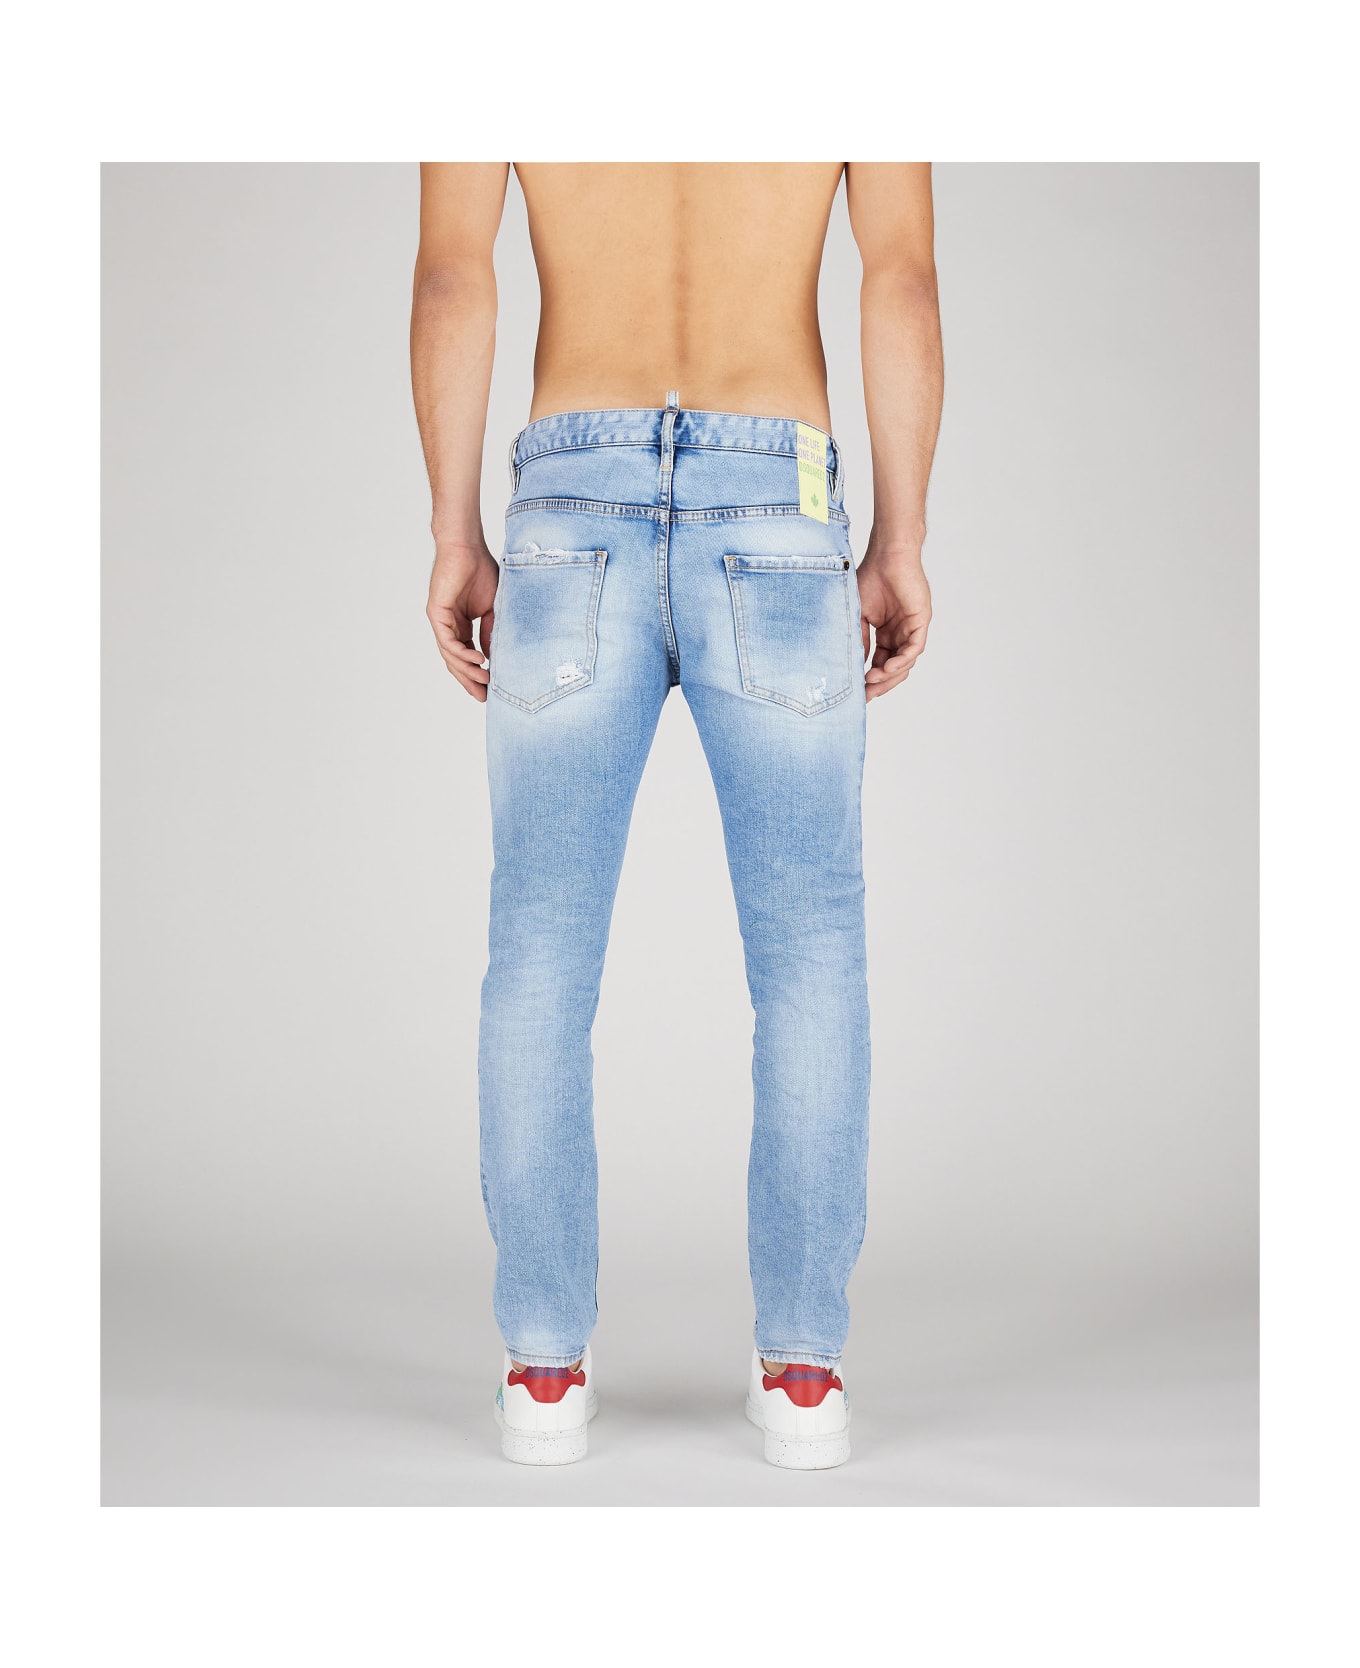 Dsquared2 Light Blue Five-pocket Jeans - Navy blue